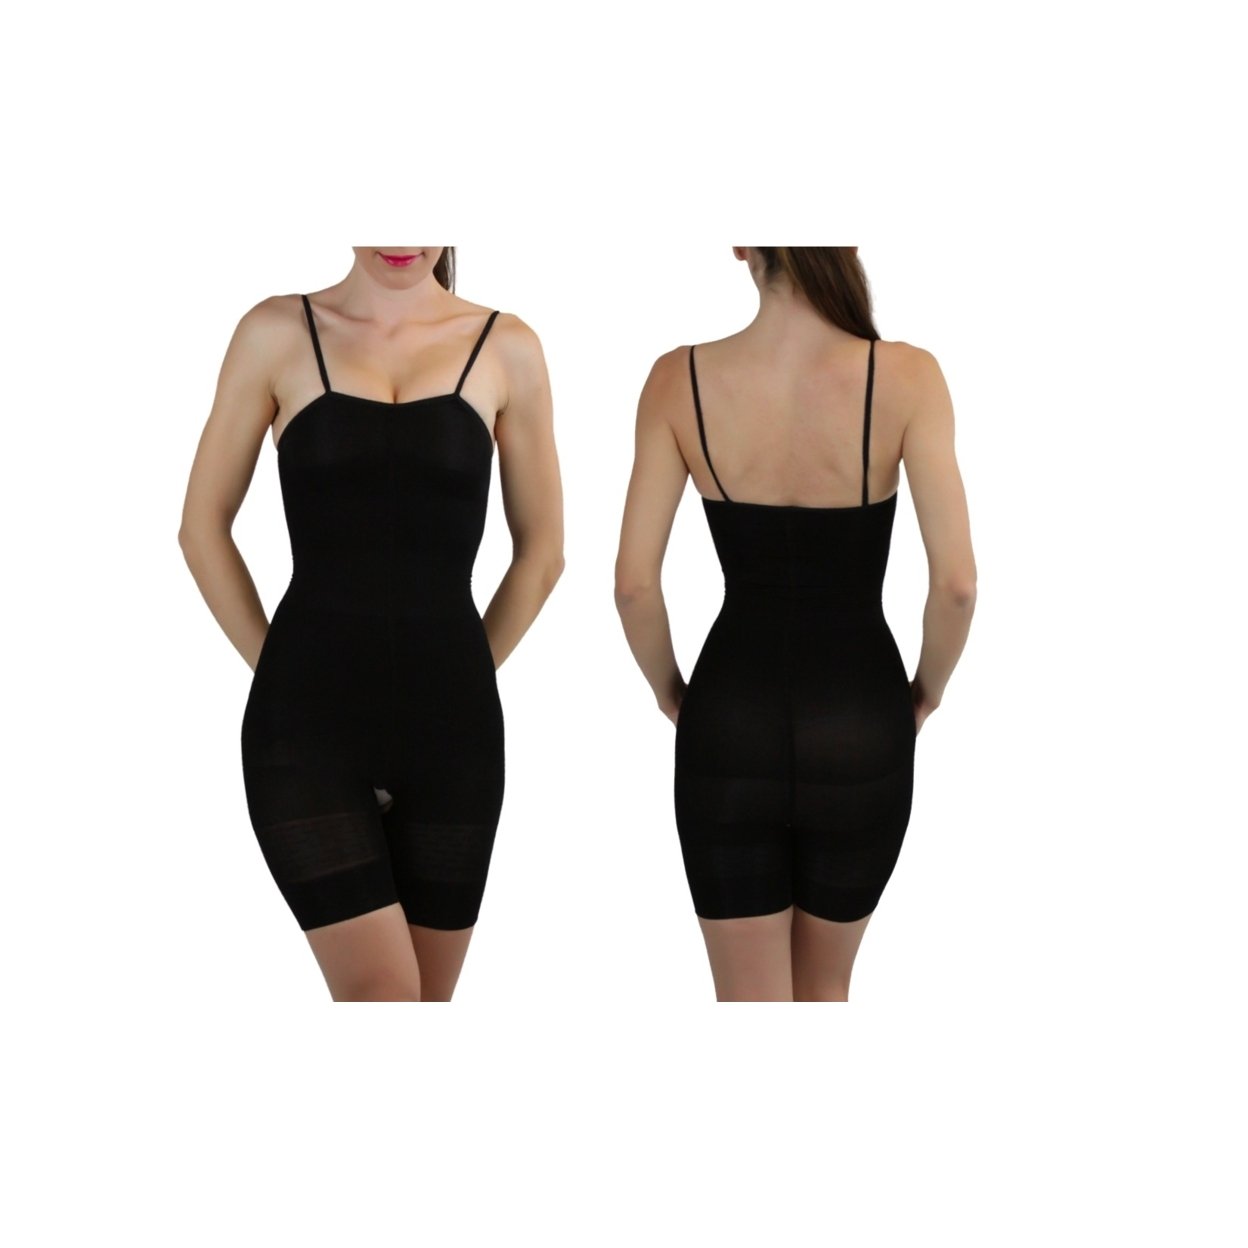 Women's Slimming Body Suit - Beige, S